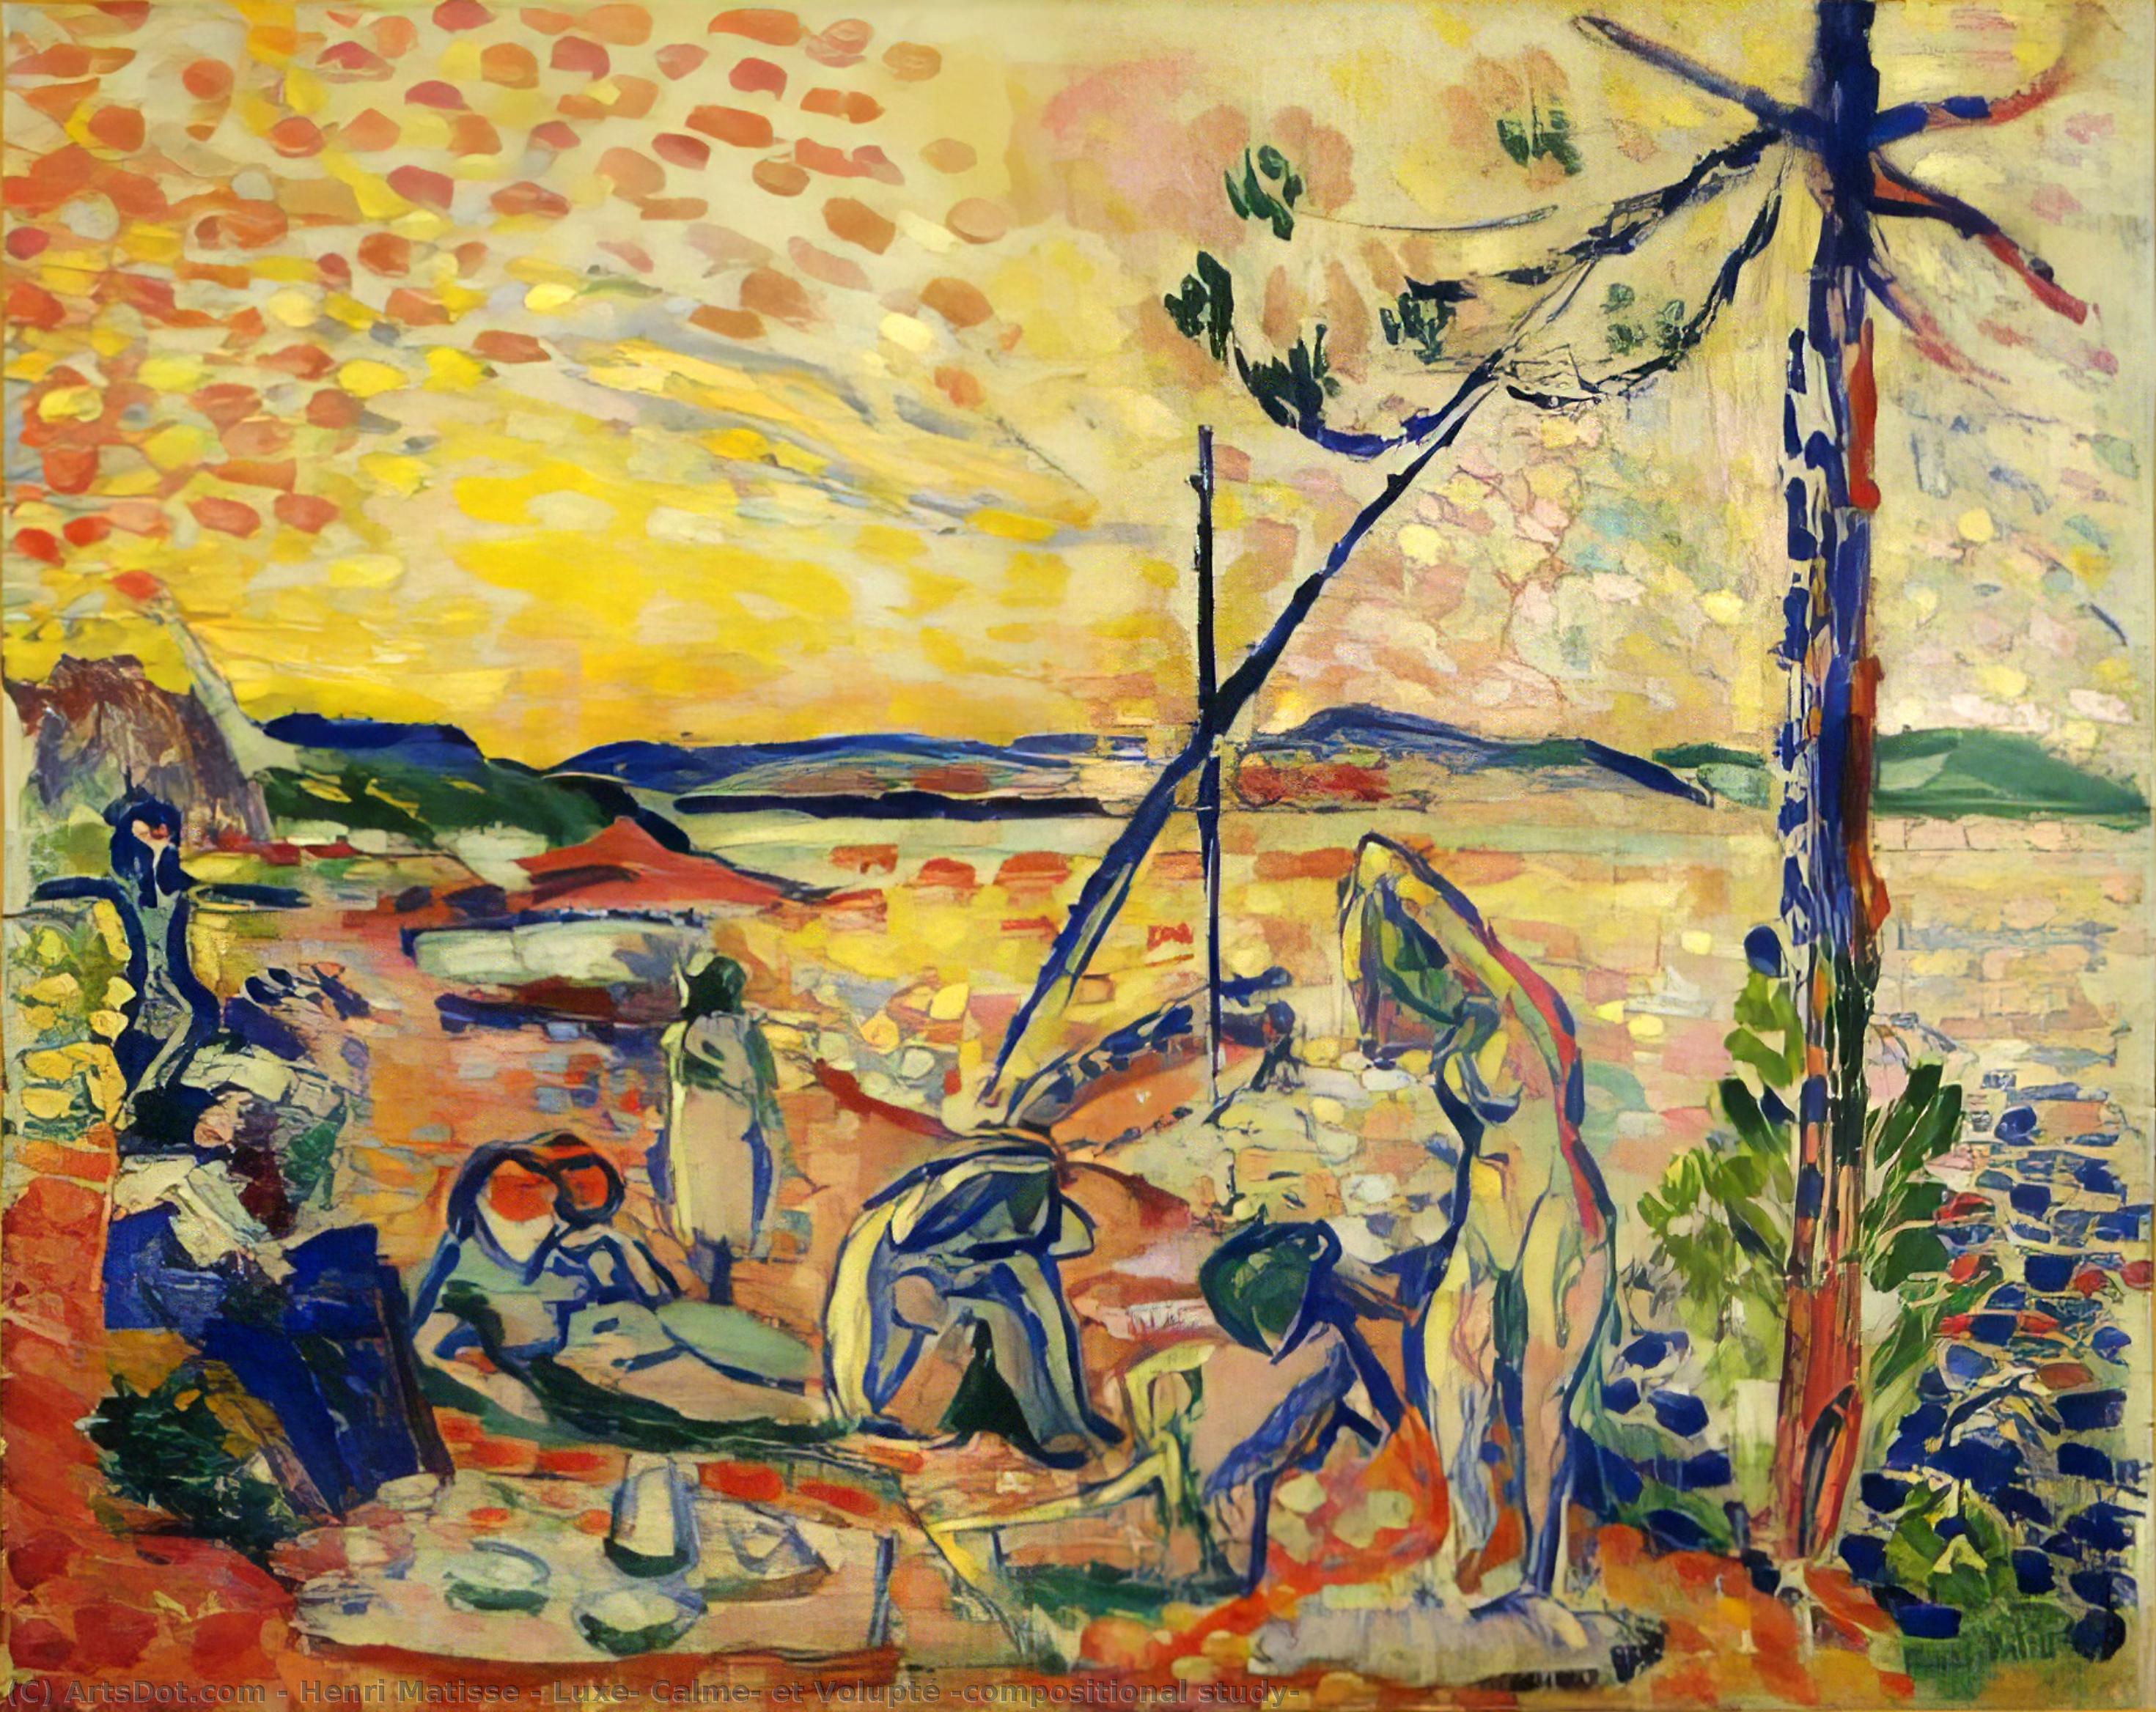 Kauf Museum Kunstreproduktionen Luxe, Calme, et Volupté (Zusammensetzungsstudie), 1904 von Henri Matisse (Inspiriert von) (1869-1954, France) | ArtsDot.com